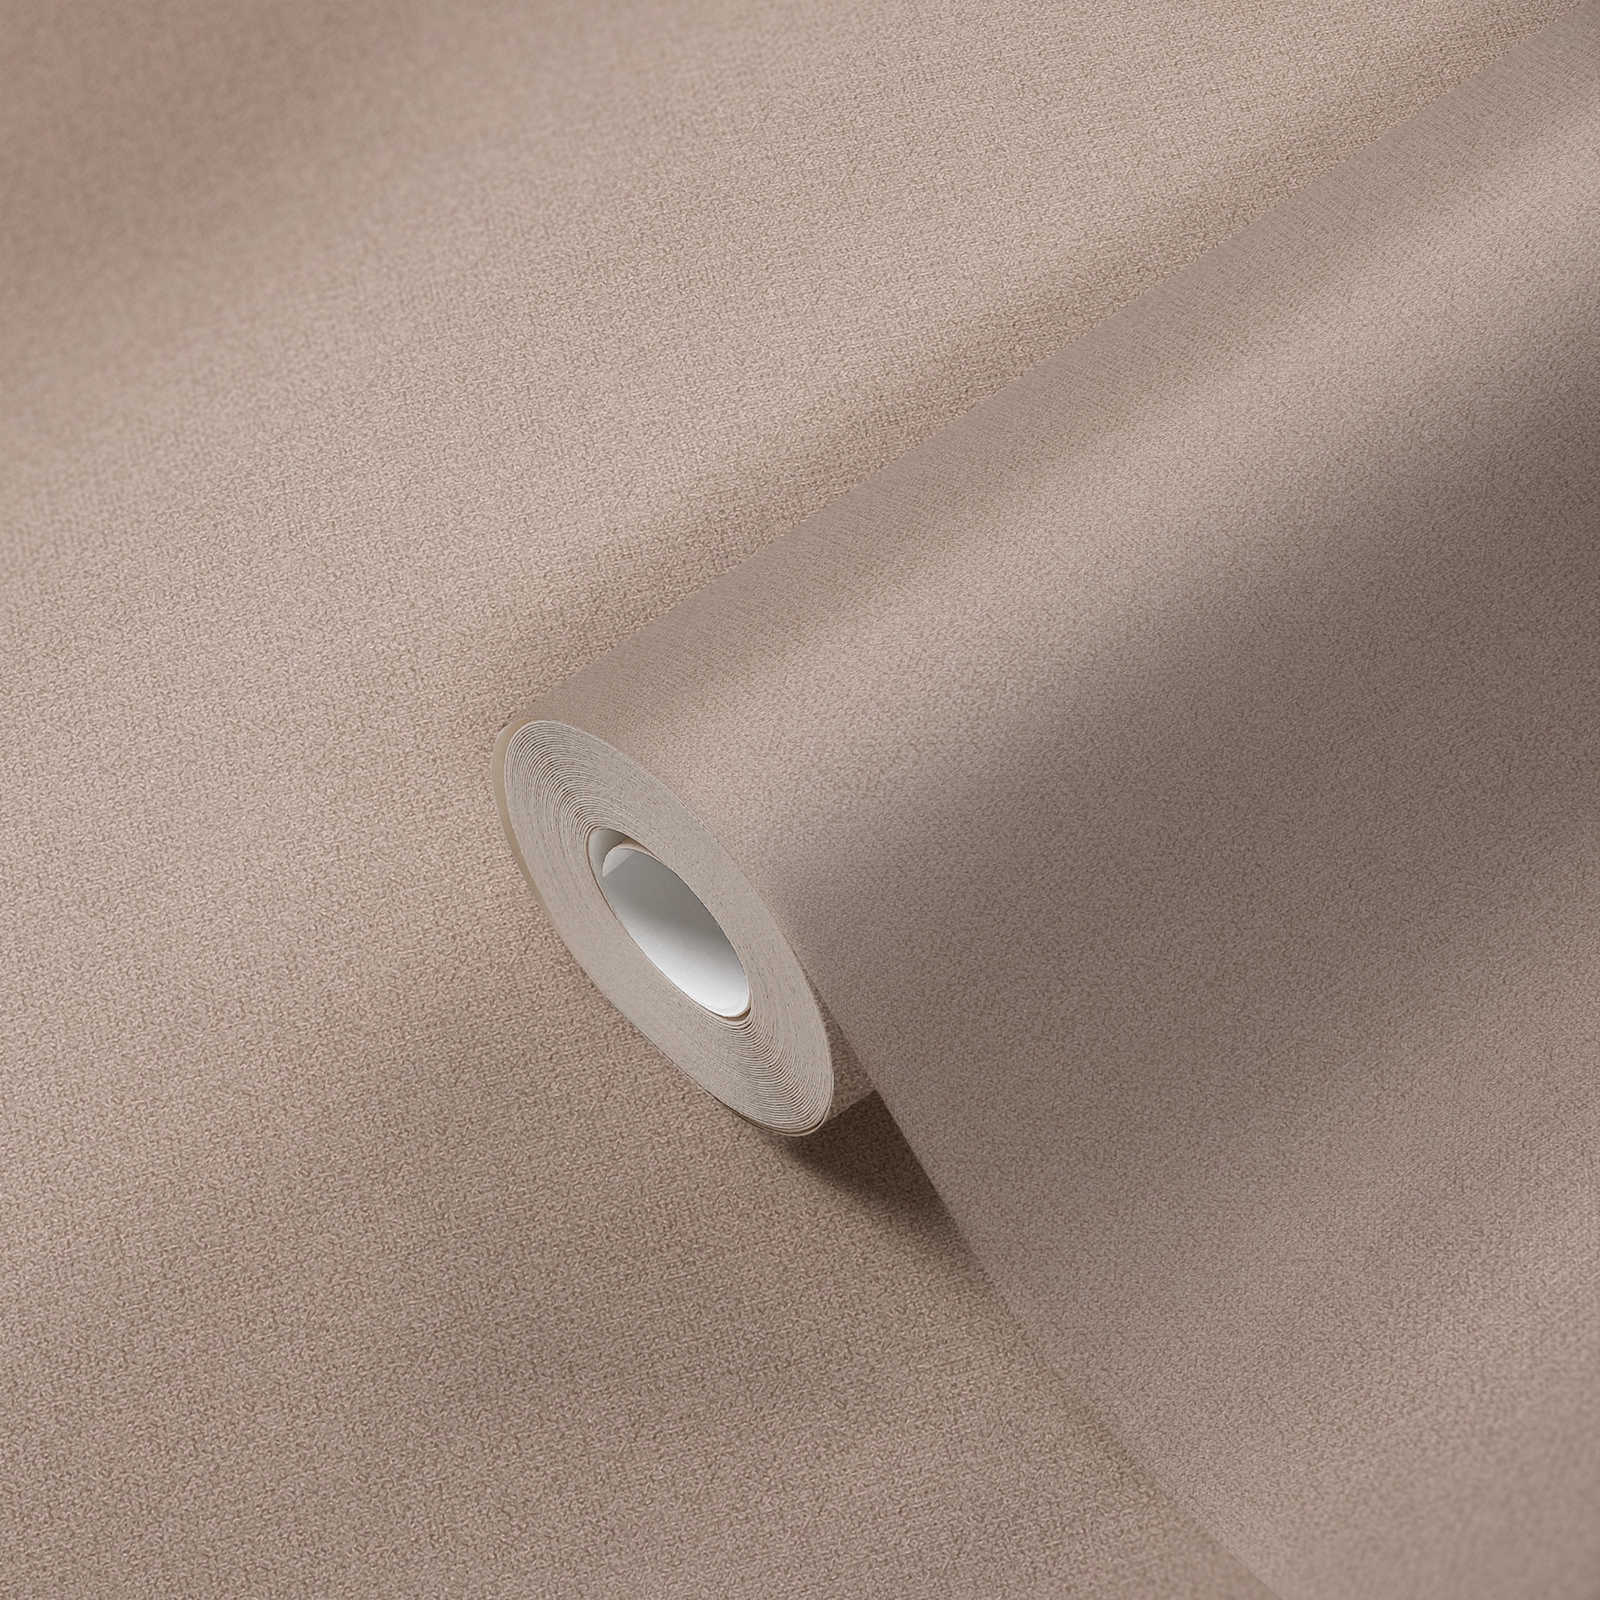             Papier peint uni aspect lin sans PVC - marron, beige
        